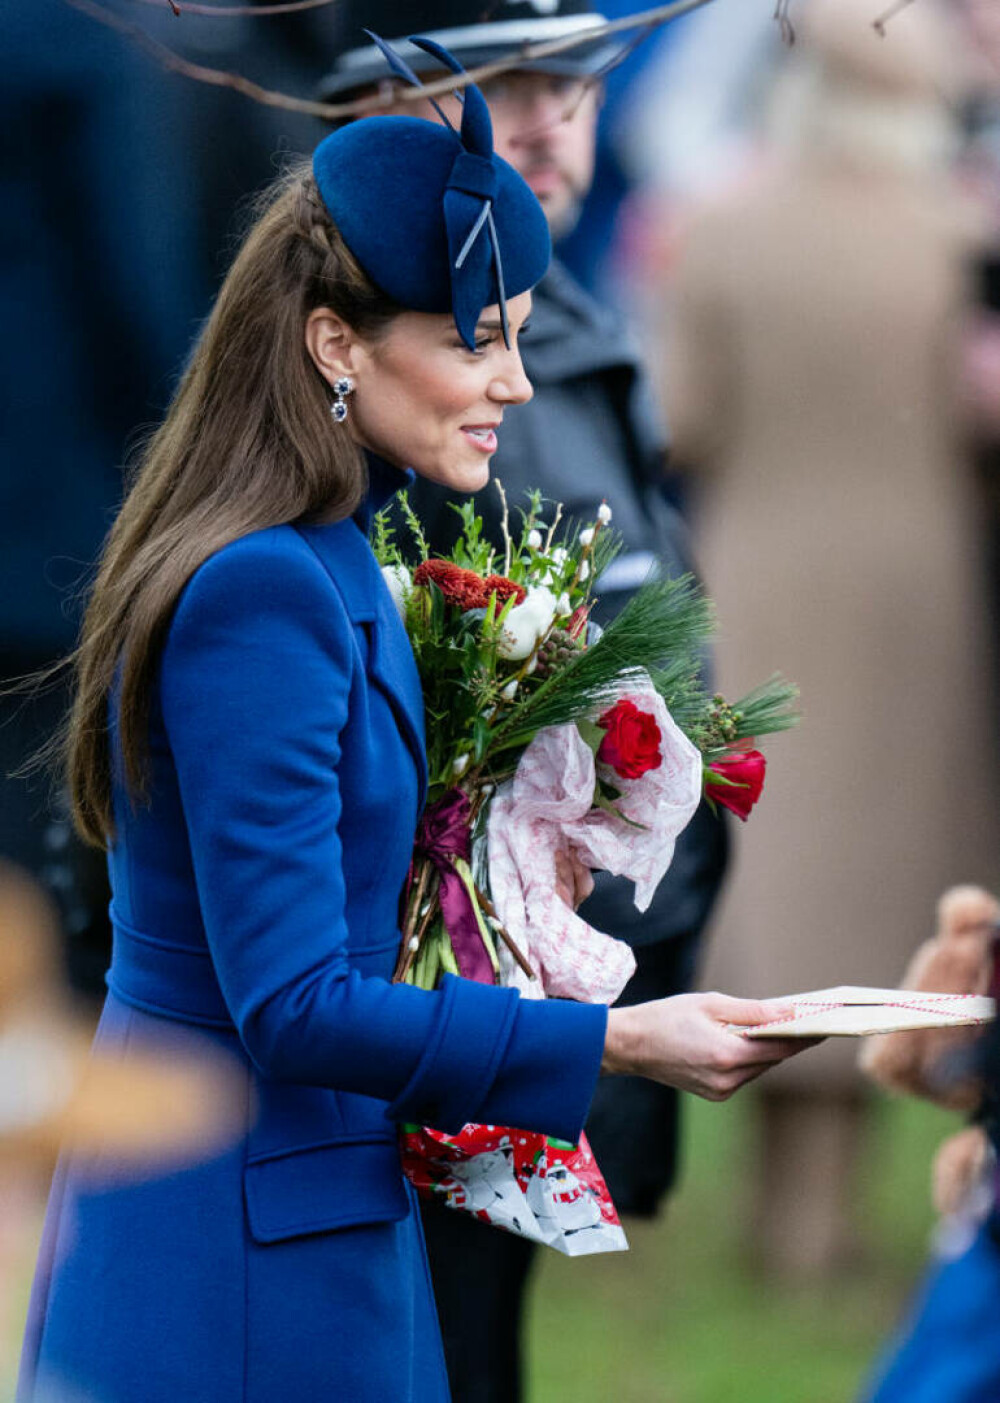 Ultima apariție publică a prințesei de Wales, Kate Middleton, înainte de operația abdominală. Cum s-a prezentat | FOTO - Imaginea 8